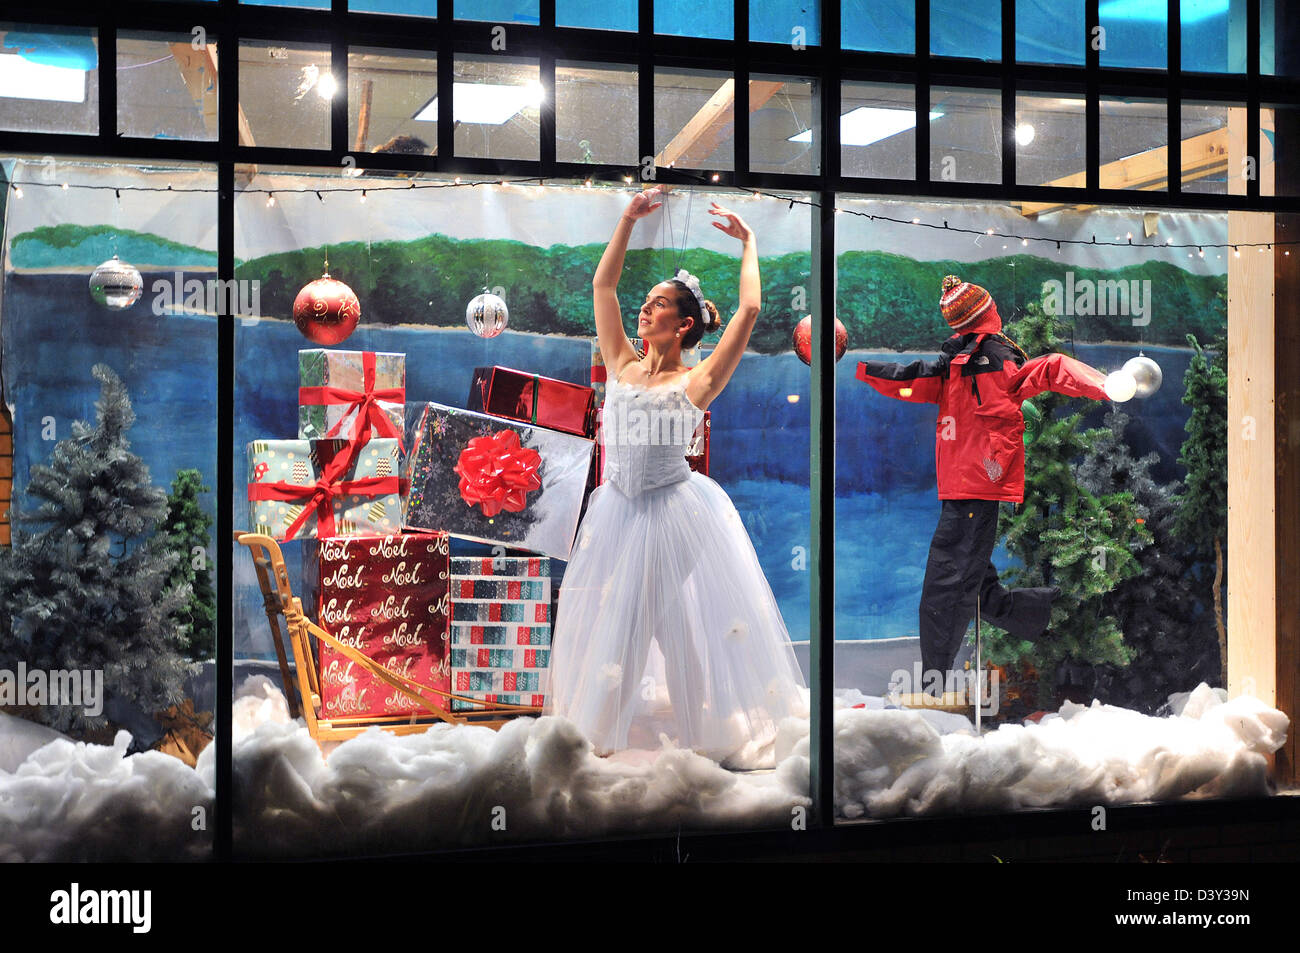 Una ballerina balli in una vetrina di un negozio durante una vacanza/festa di Natale nella piccola cittadina di Old Saybrook in CT STATI UNITI D'AMERICA Foto Stock